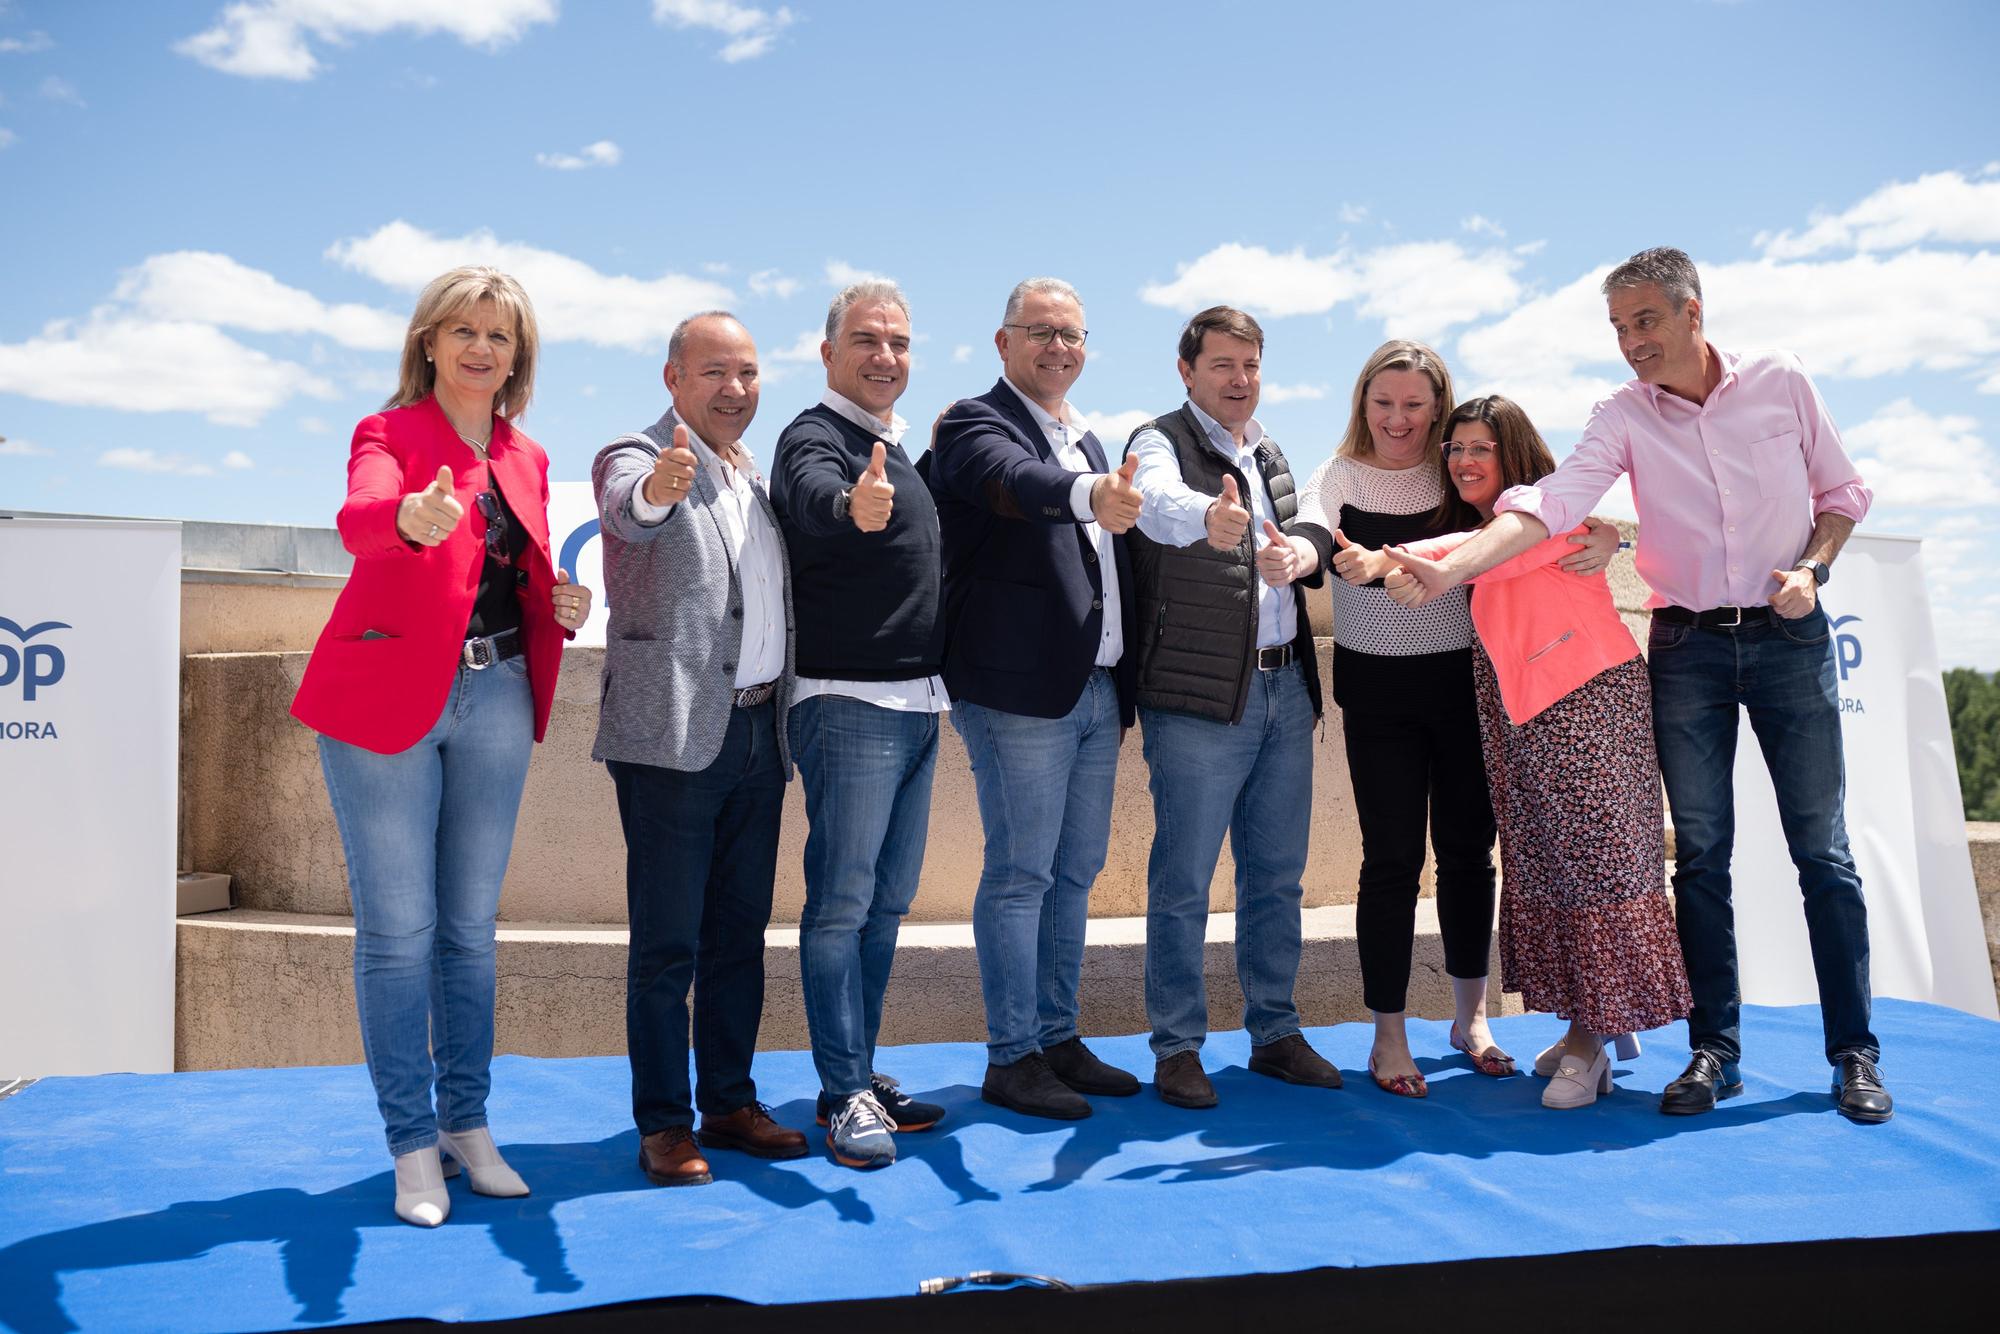 Acto del Partido Popular (PP) de Zamora en apoyo a Jesús María Prada